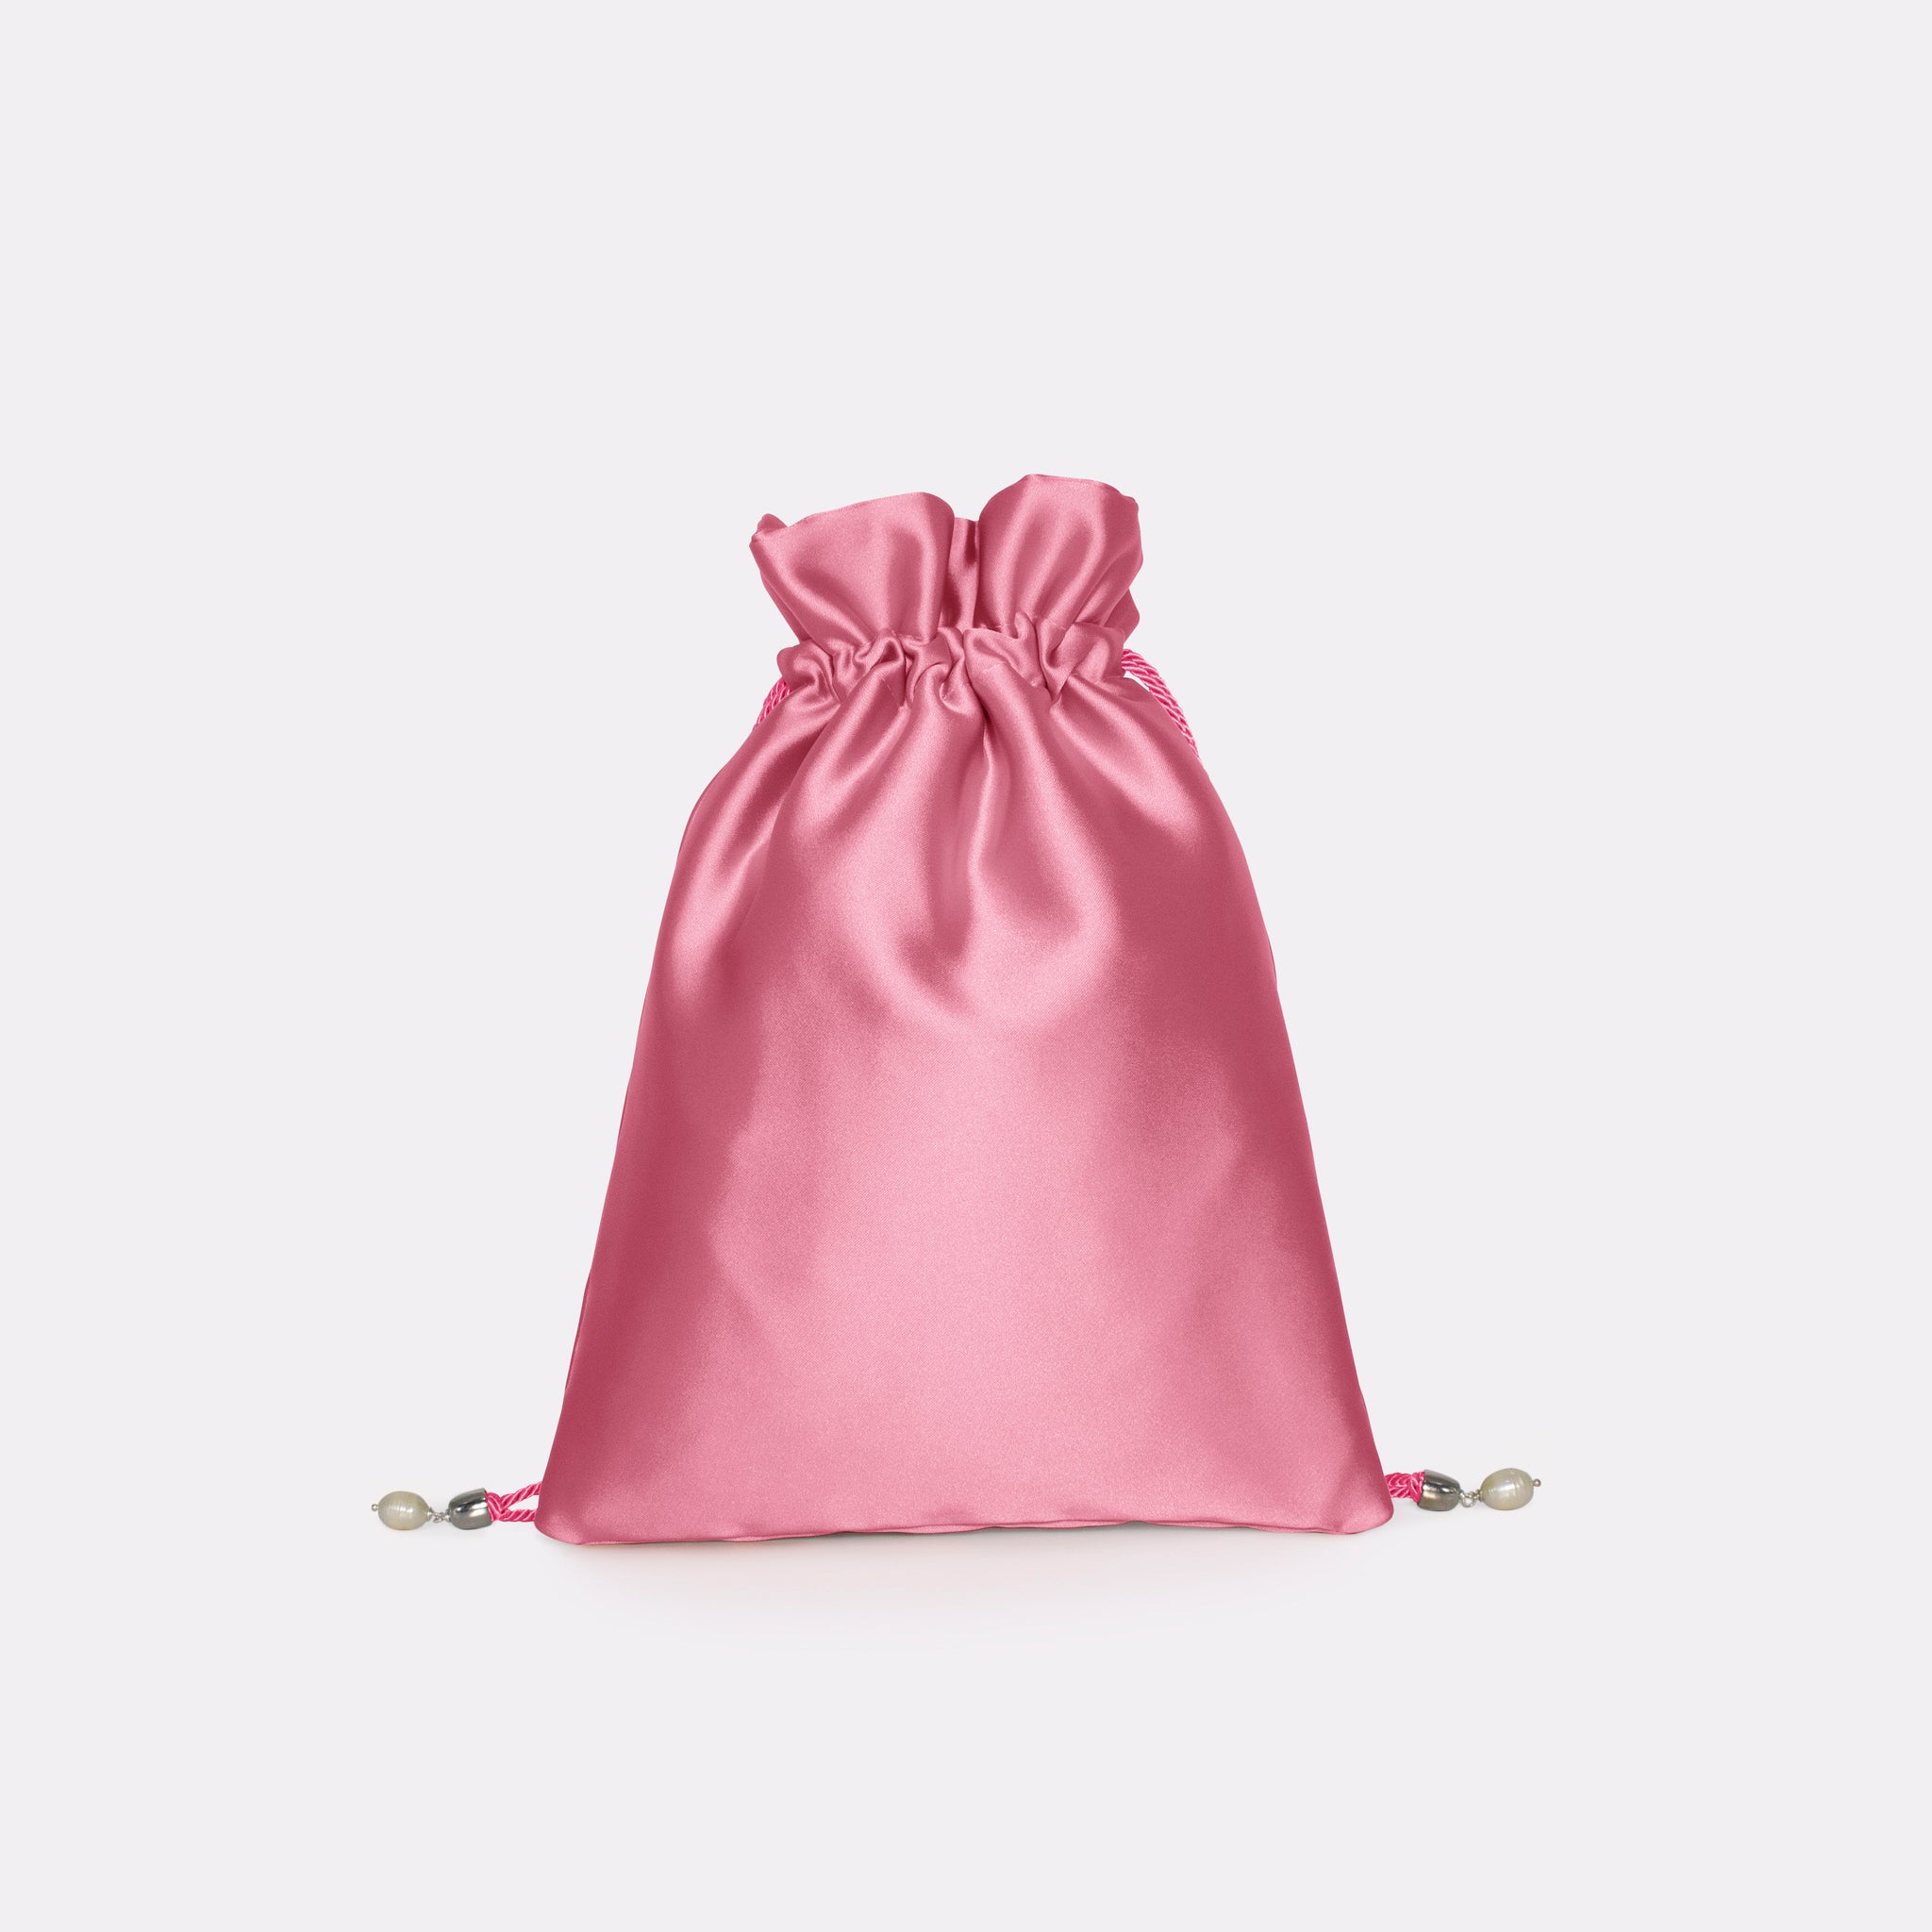 Giulia flat bag in colorazione hot pink